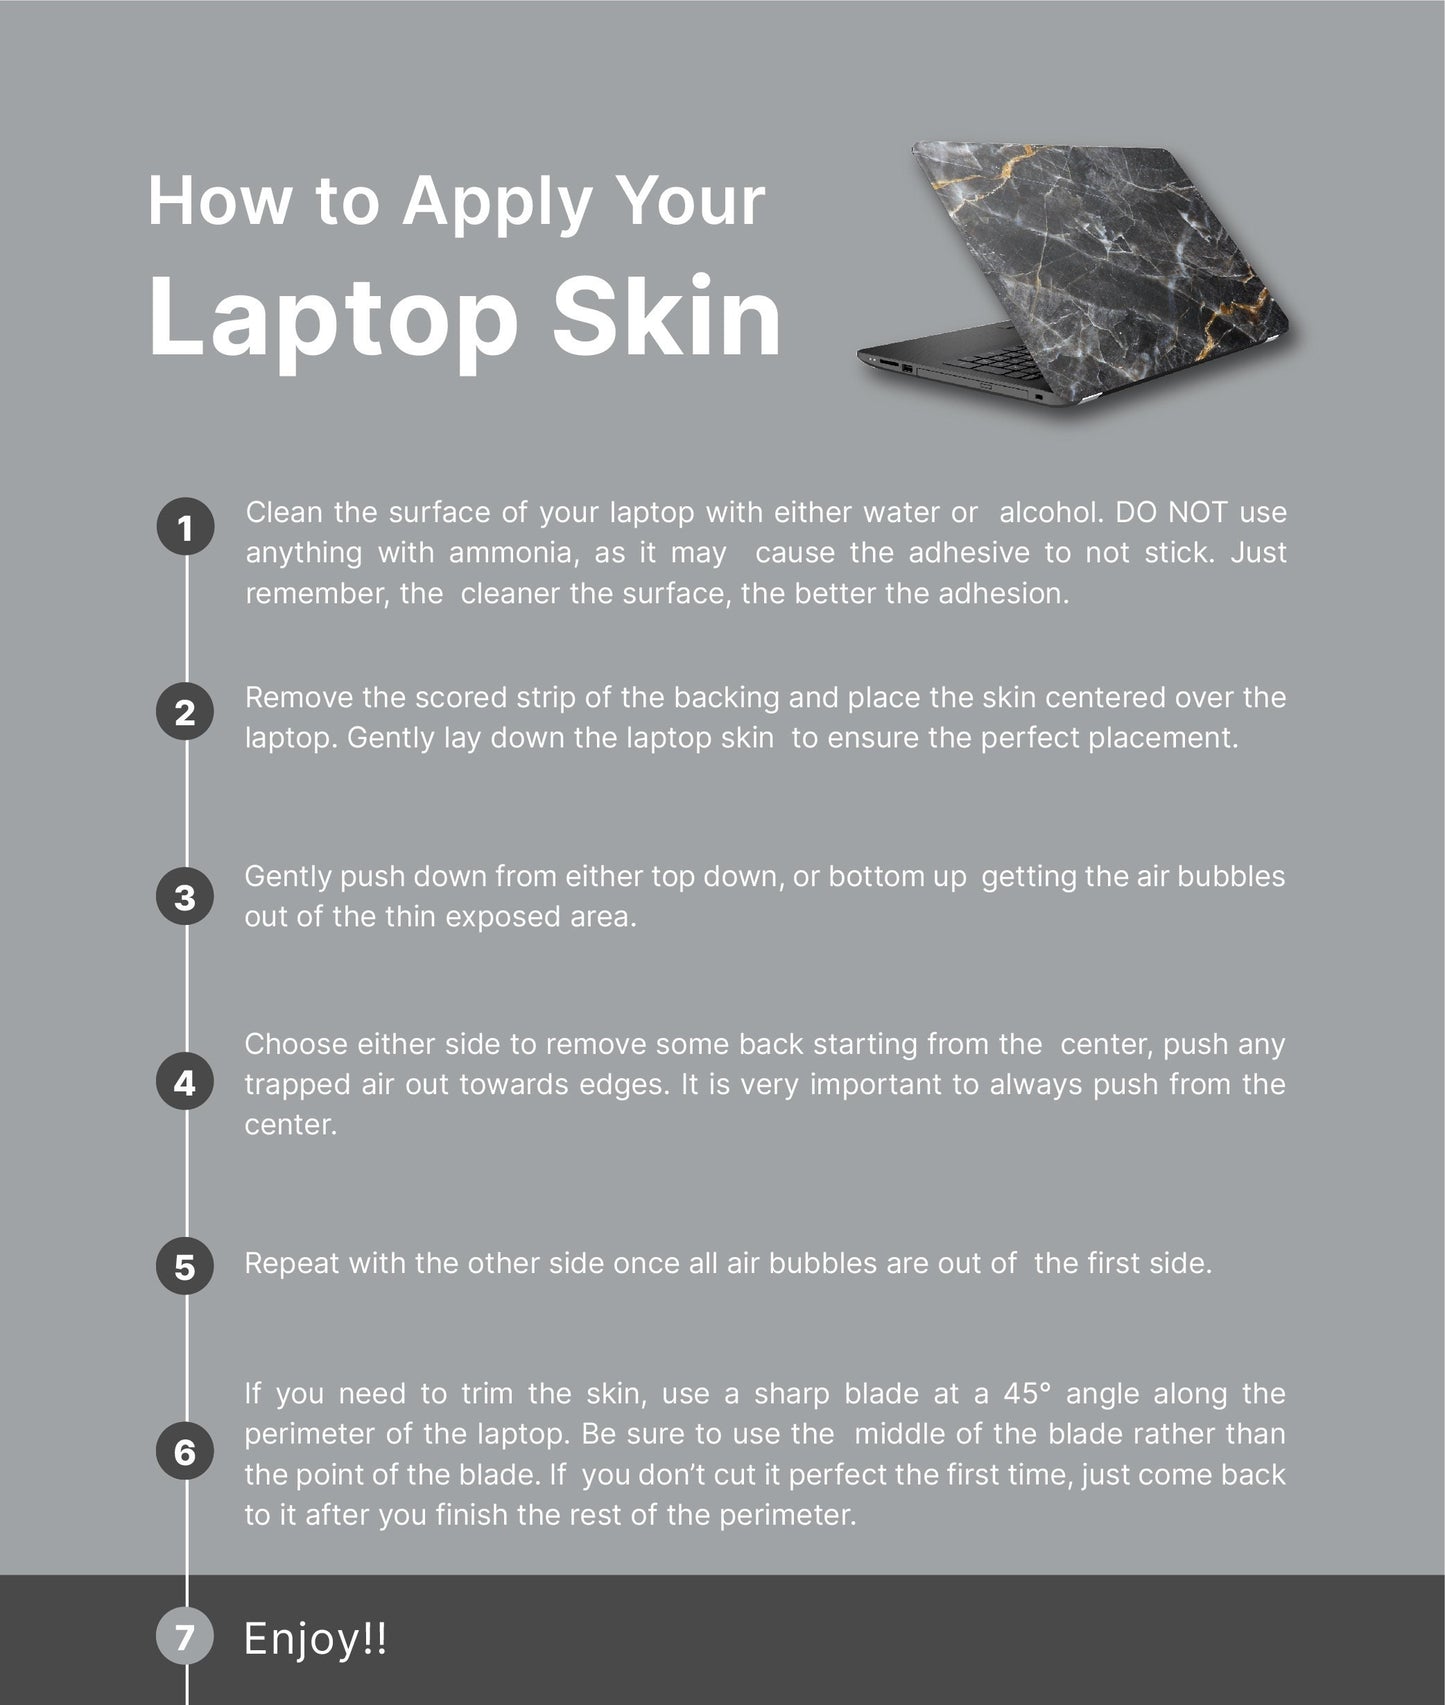 Tropical Sepia Laptop Skin, Laptop Cover, Laptop Skins, Removable Laptop Skins, Laptop Decal, Customized Laptop Skin, Laptop Stickers 242